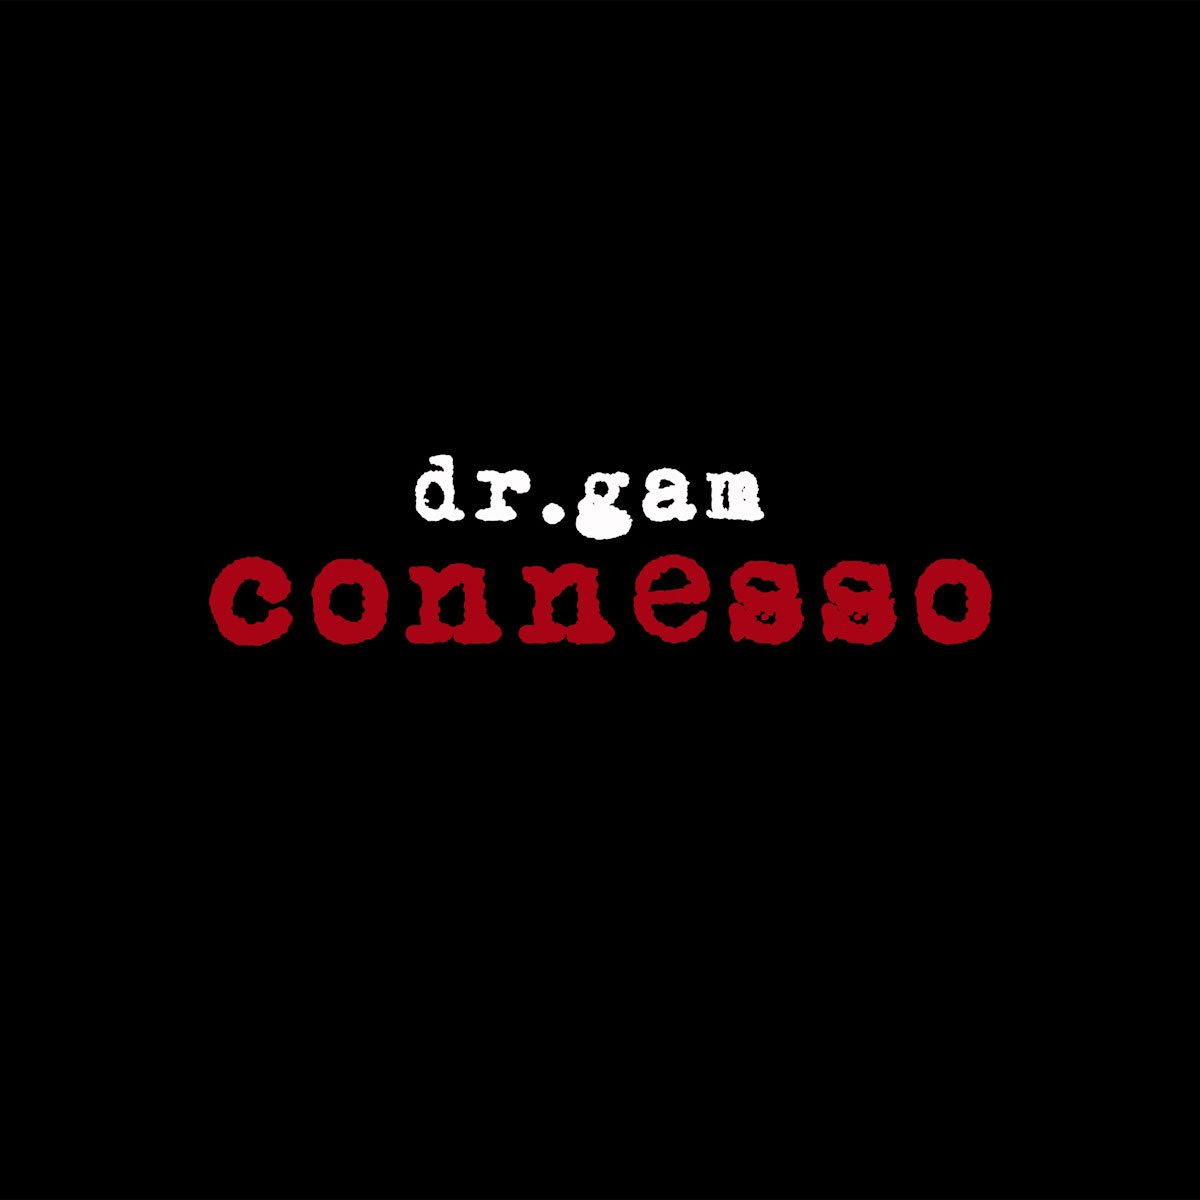 dr.gam: dal 28 giugno sui digital store e in radio “CONNESSO” il nuovo singolo